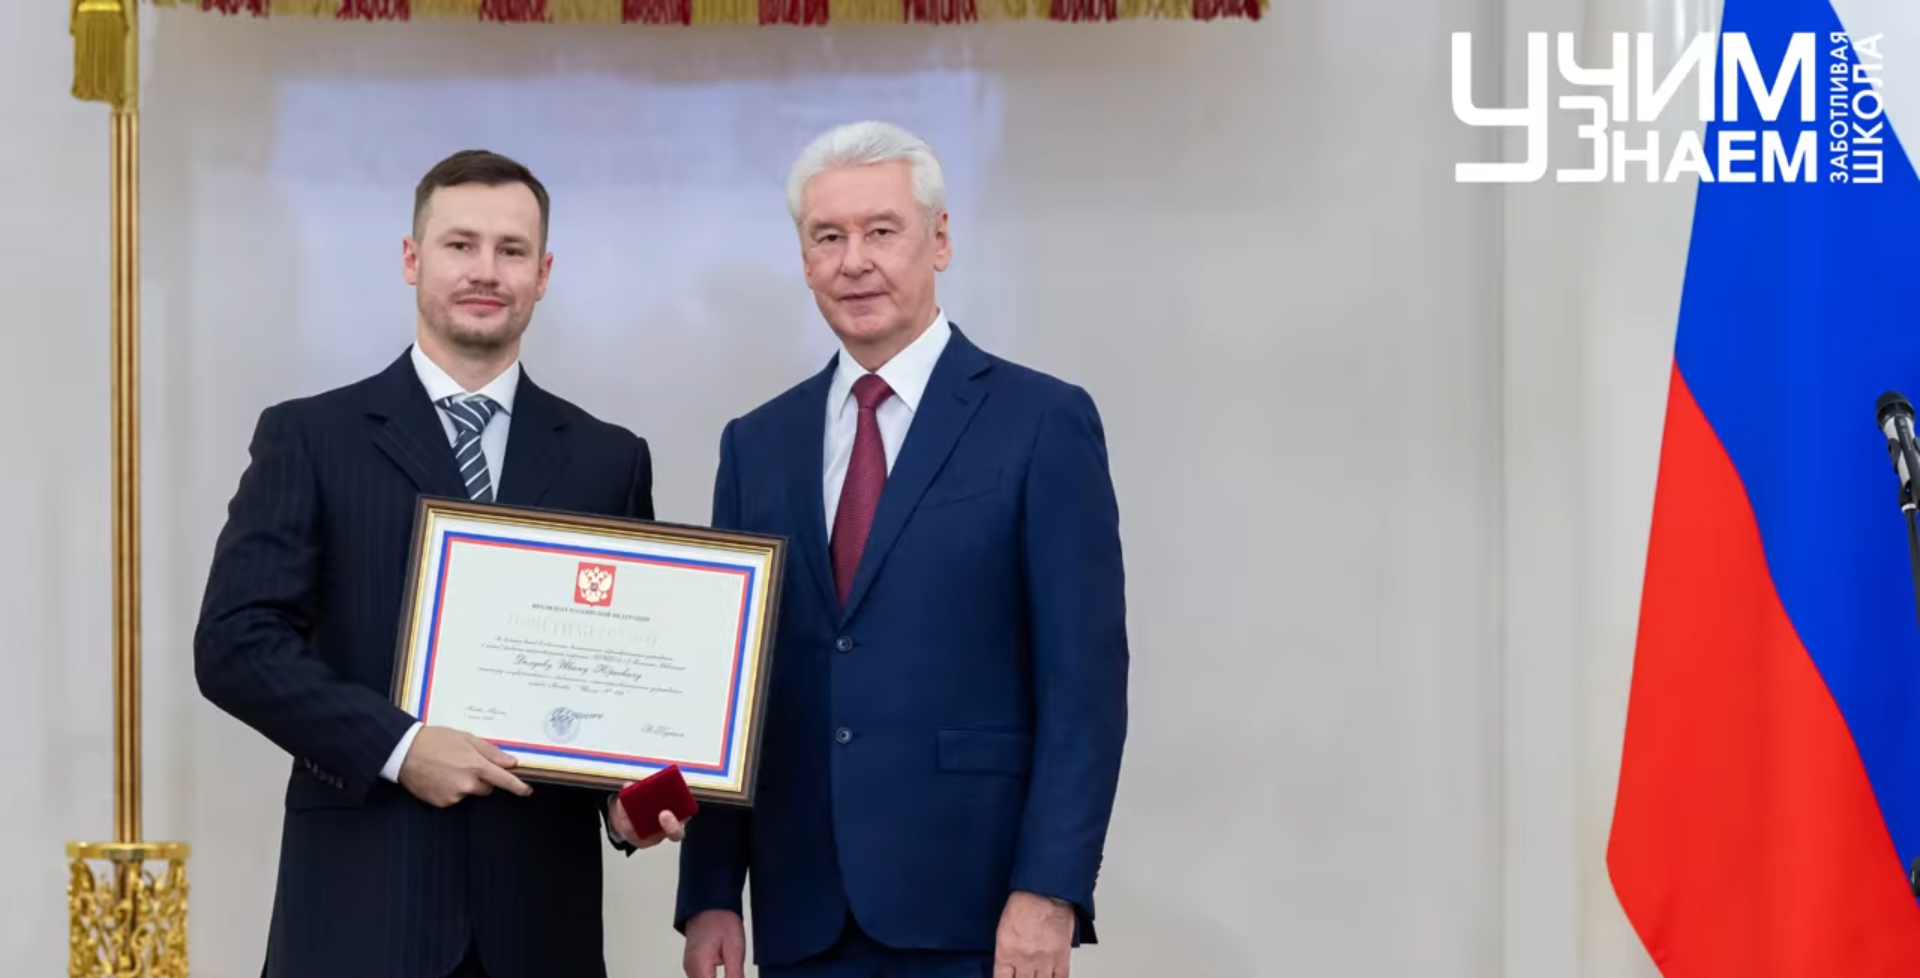 Наши тьюторы были награждены за большой вклад в обеспечение деятельности образовательных учреждений в период эпидемии коронавирусной инфекции (COVID-19) в Российской Федерации